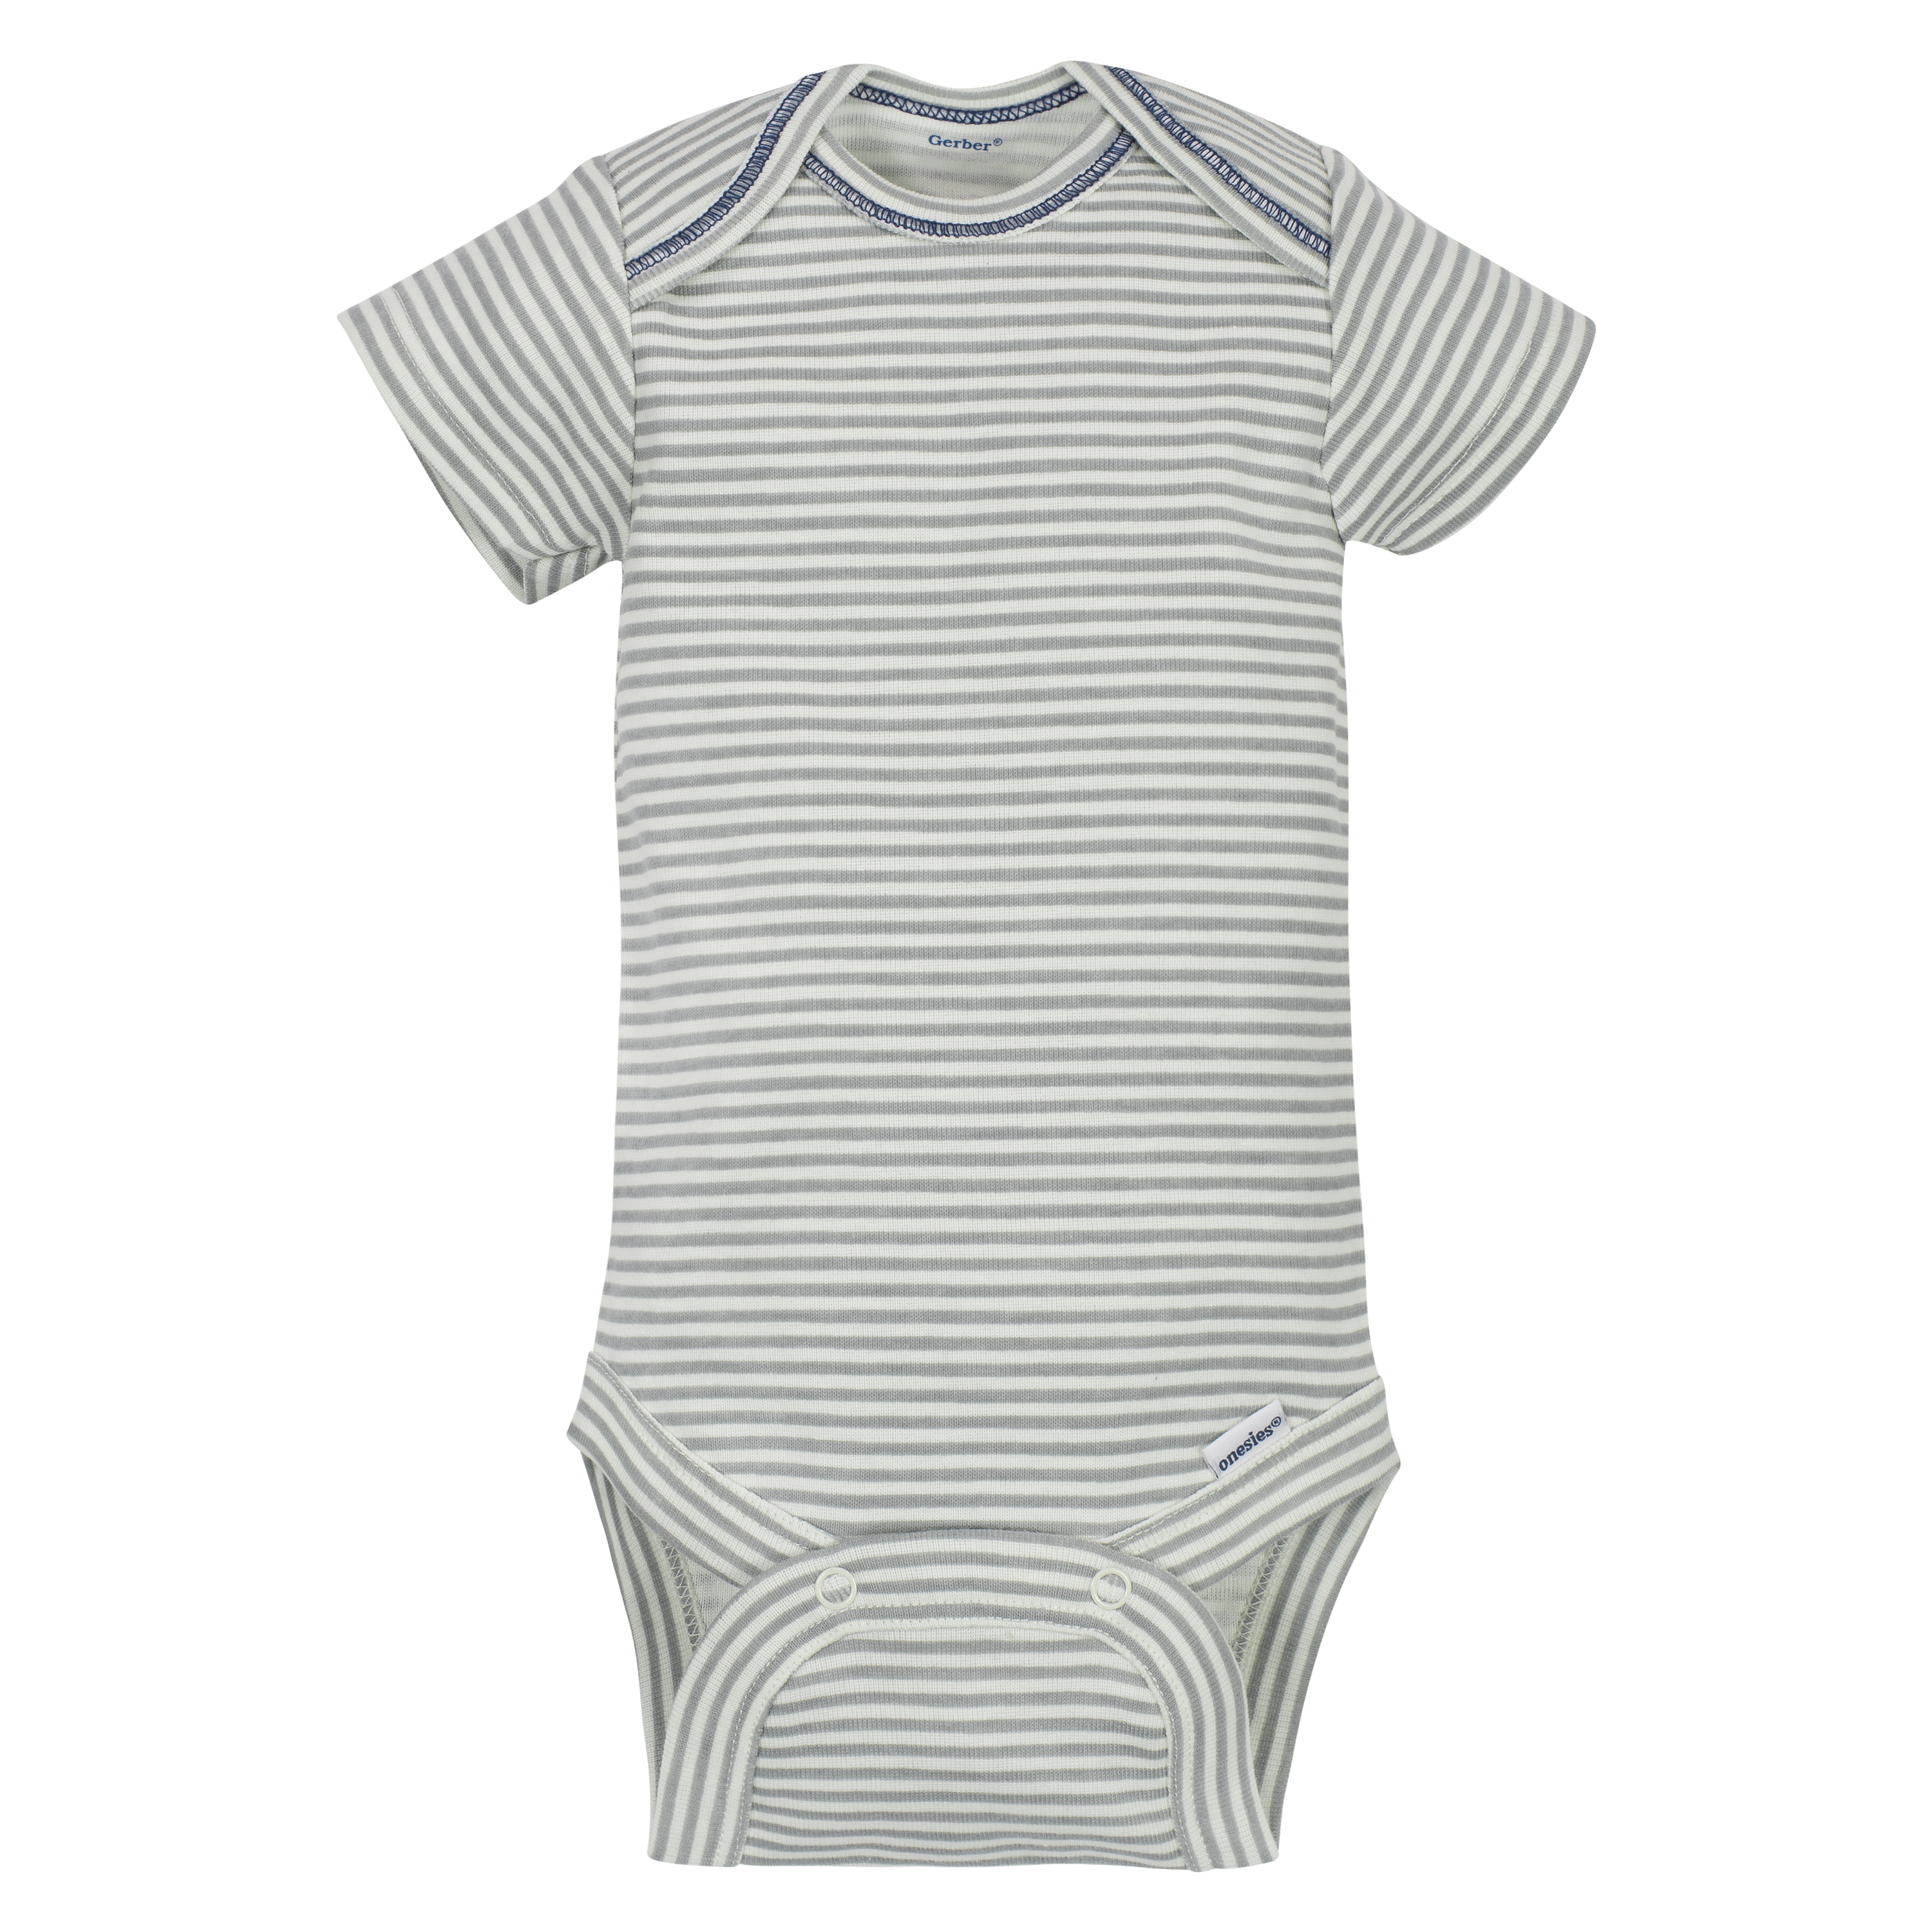 Gerber Baby Boy Short Sleeve Onesies Bodysuits, 5-Pack - image 8 of 11